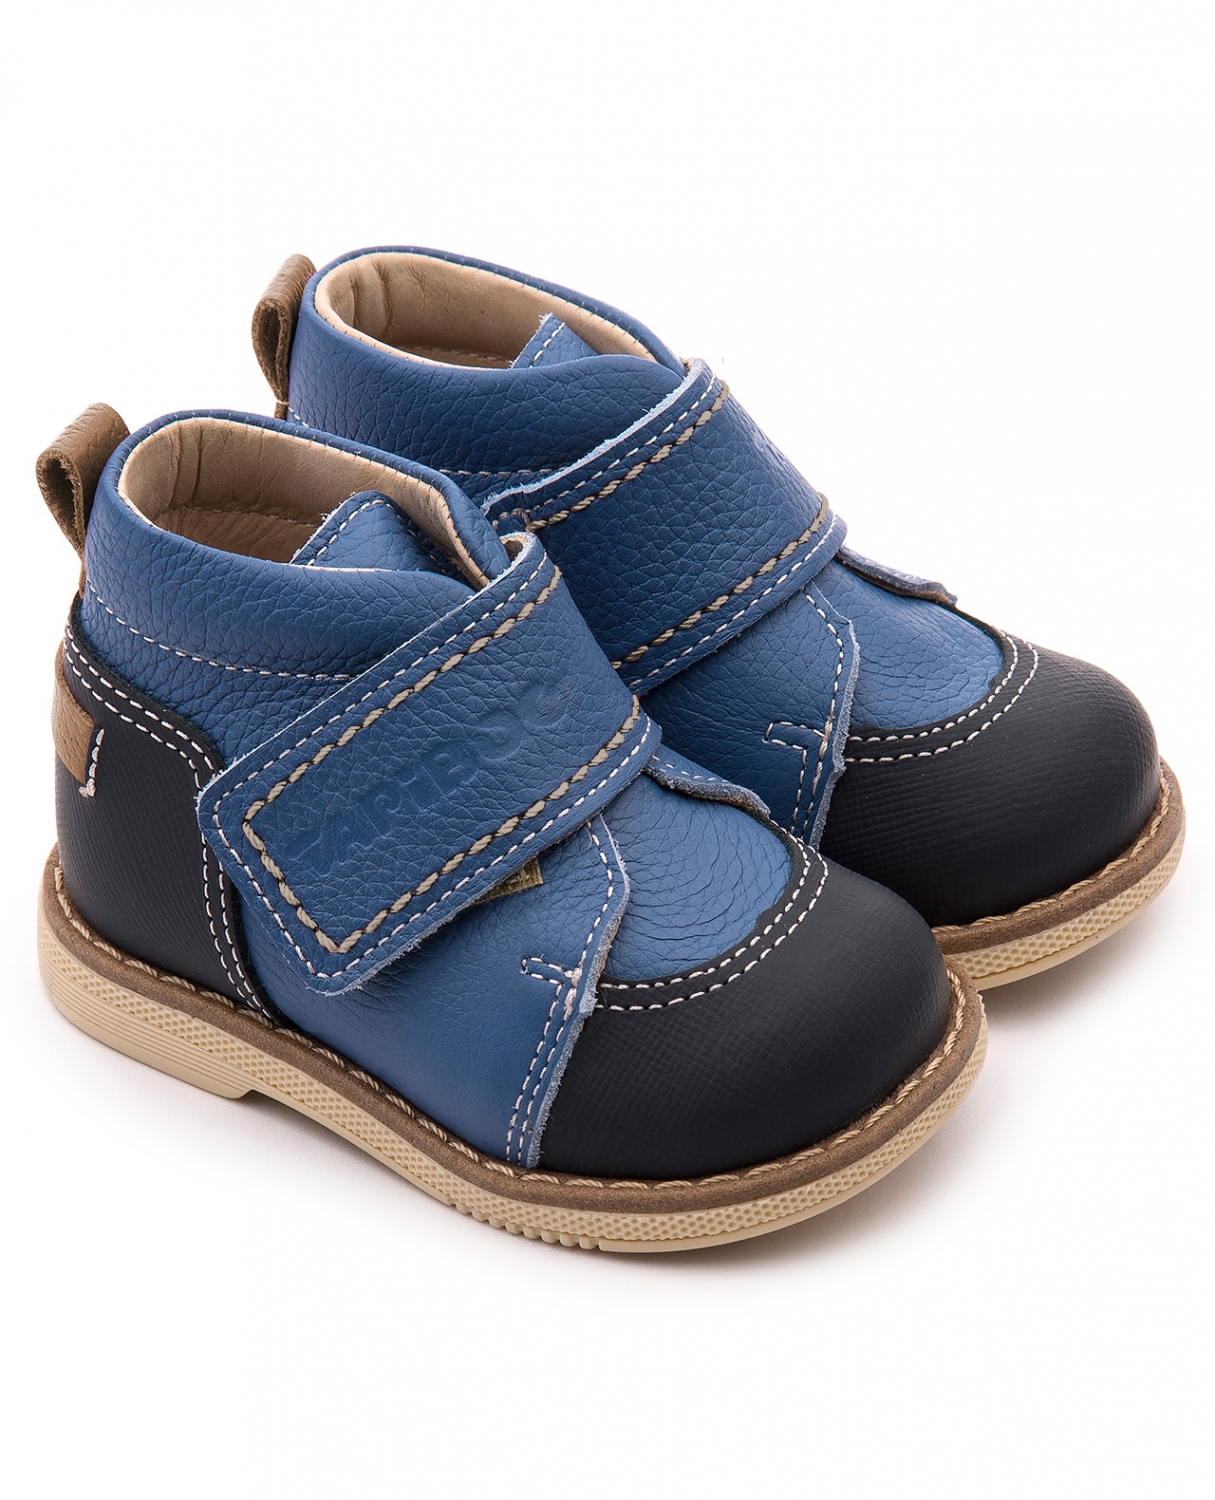 Ботинки детские Tapiboo 24015 ВАСИЛЕК, синий, 23 tapiboo ботинки чечётка 24015